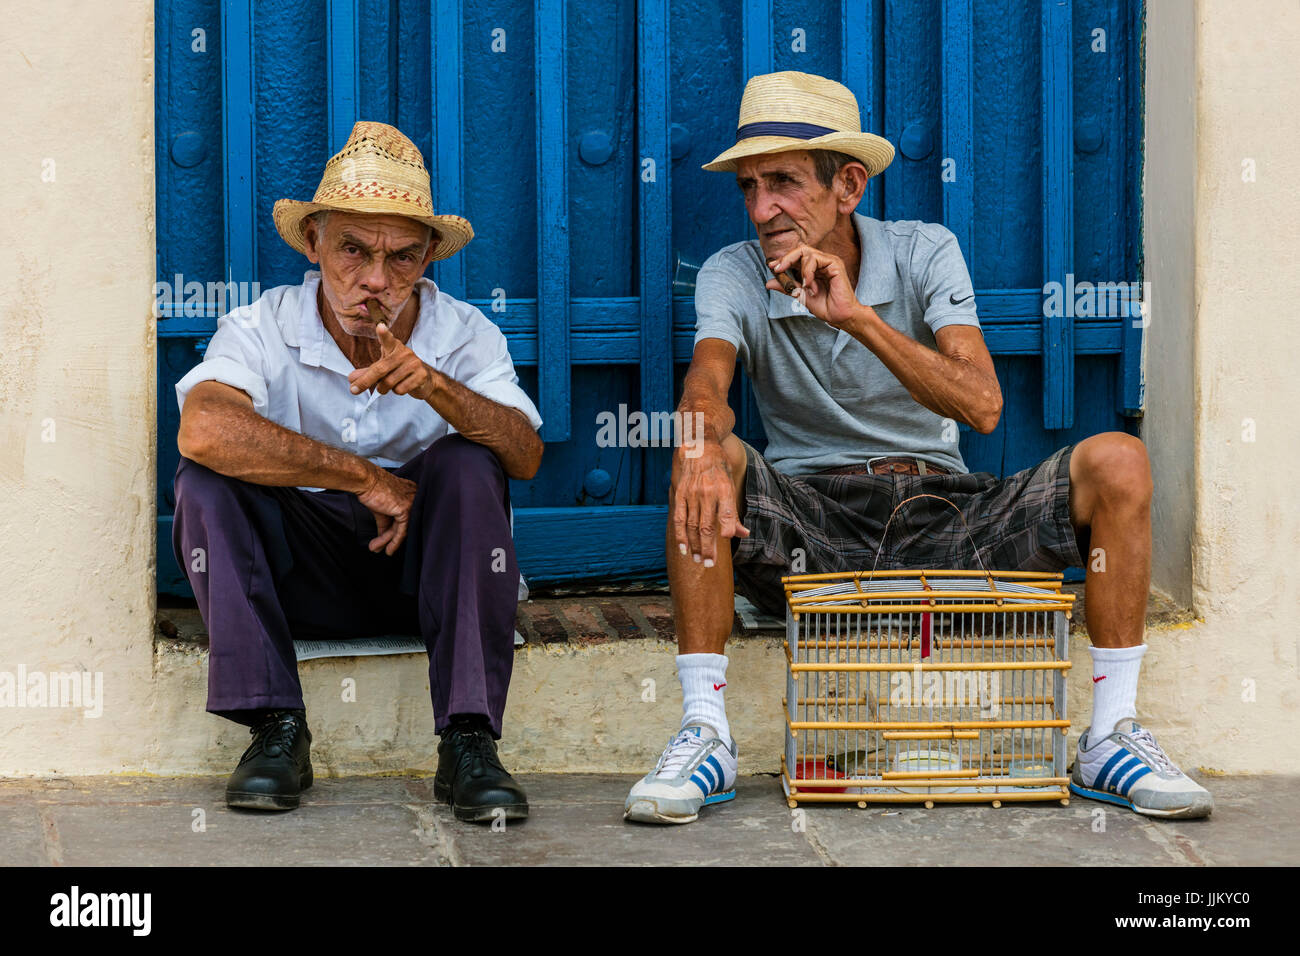 Ältere kubanische Männer rauchen Zigarren auf dem PLAZA MAYOR - TRINIDAD, Kuba Stockfoto